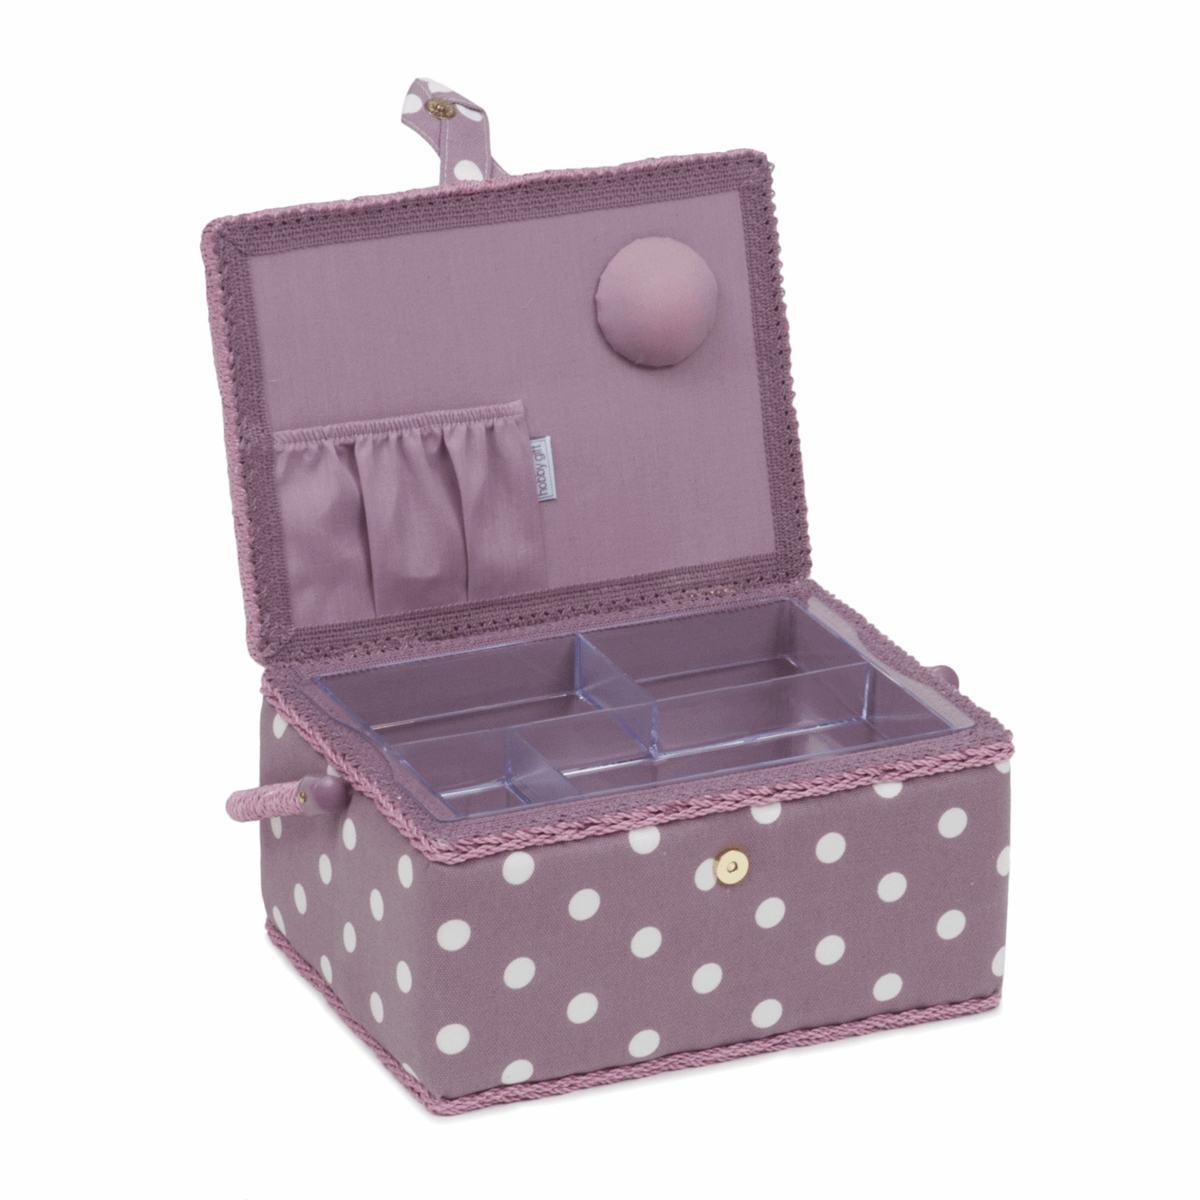 Mauve Spot Sewing Box - Medium